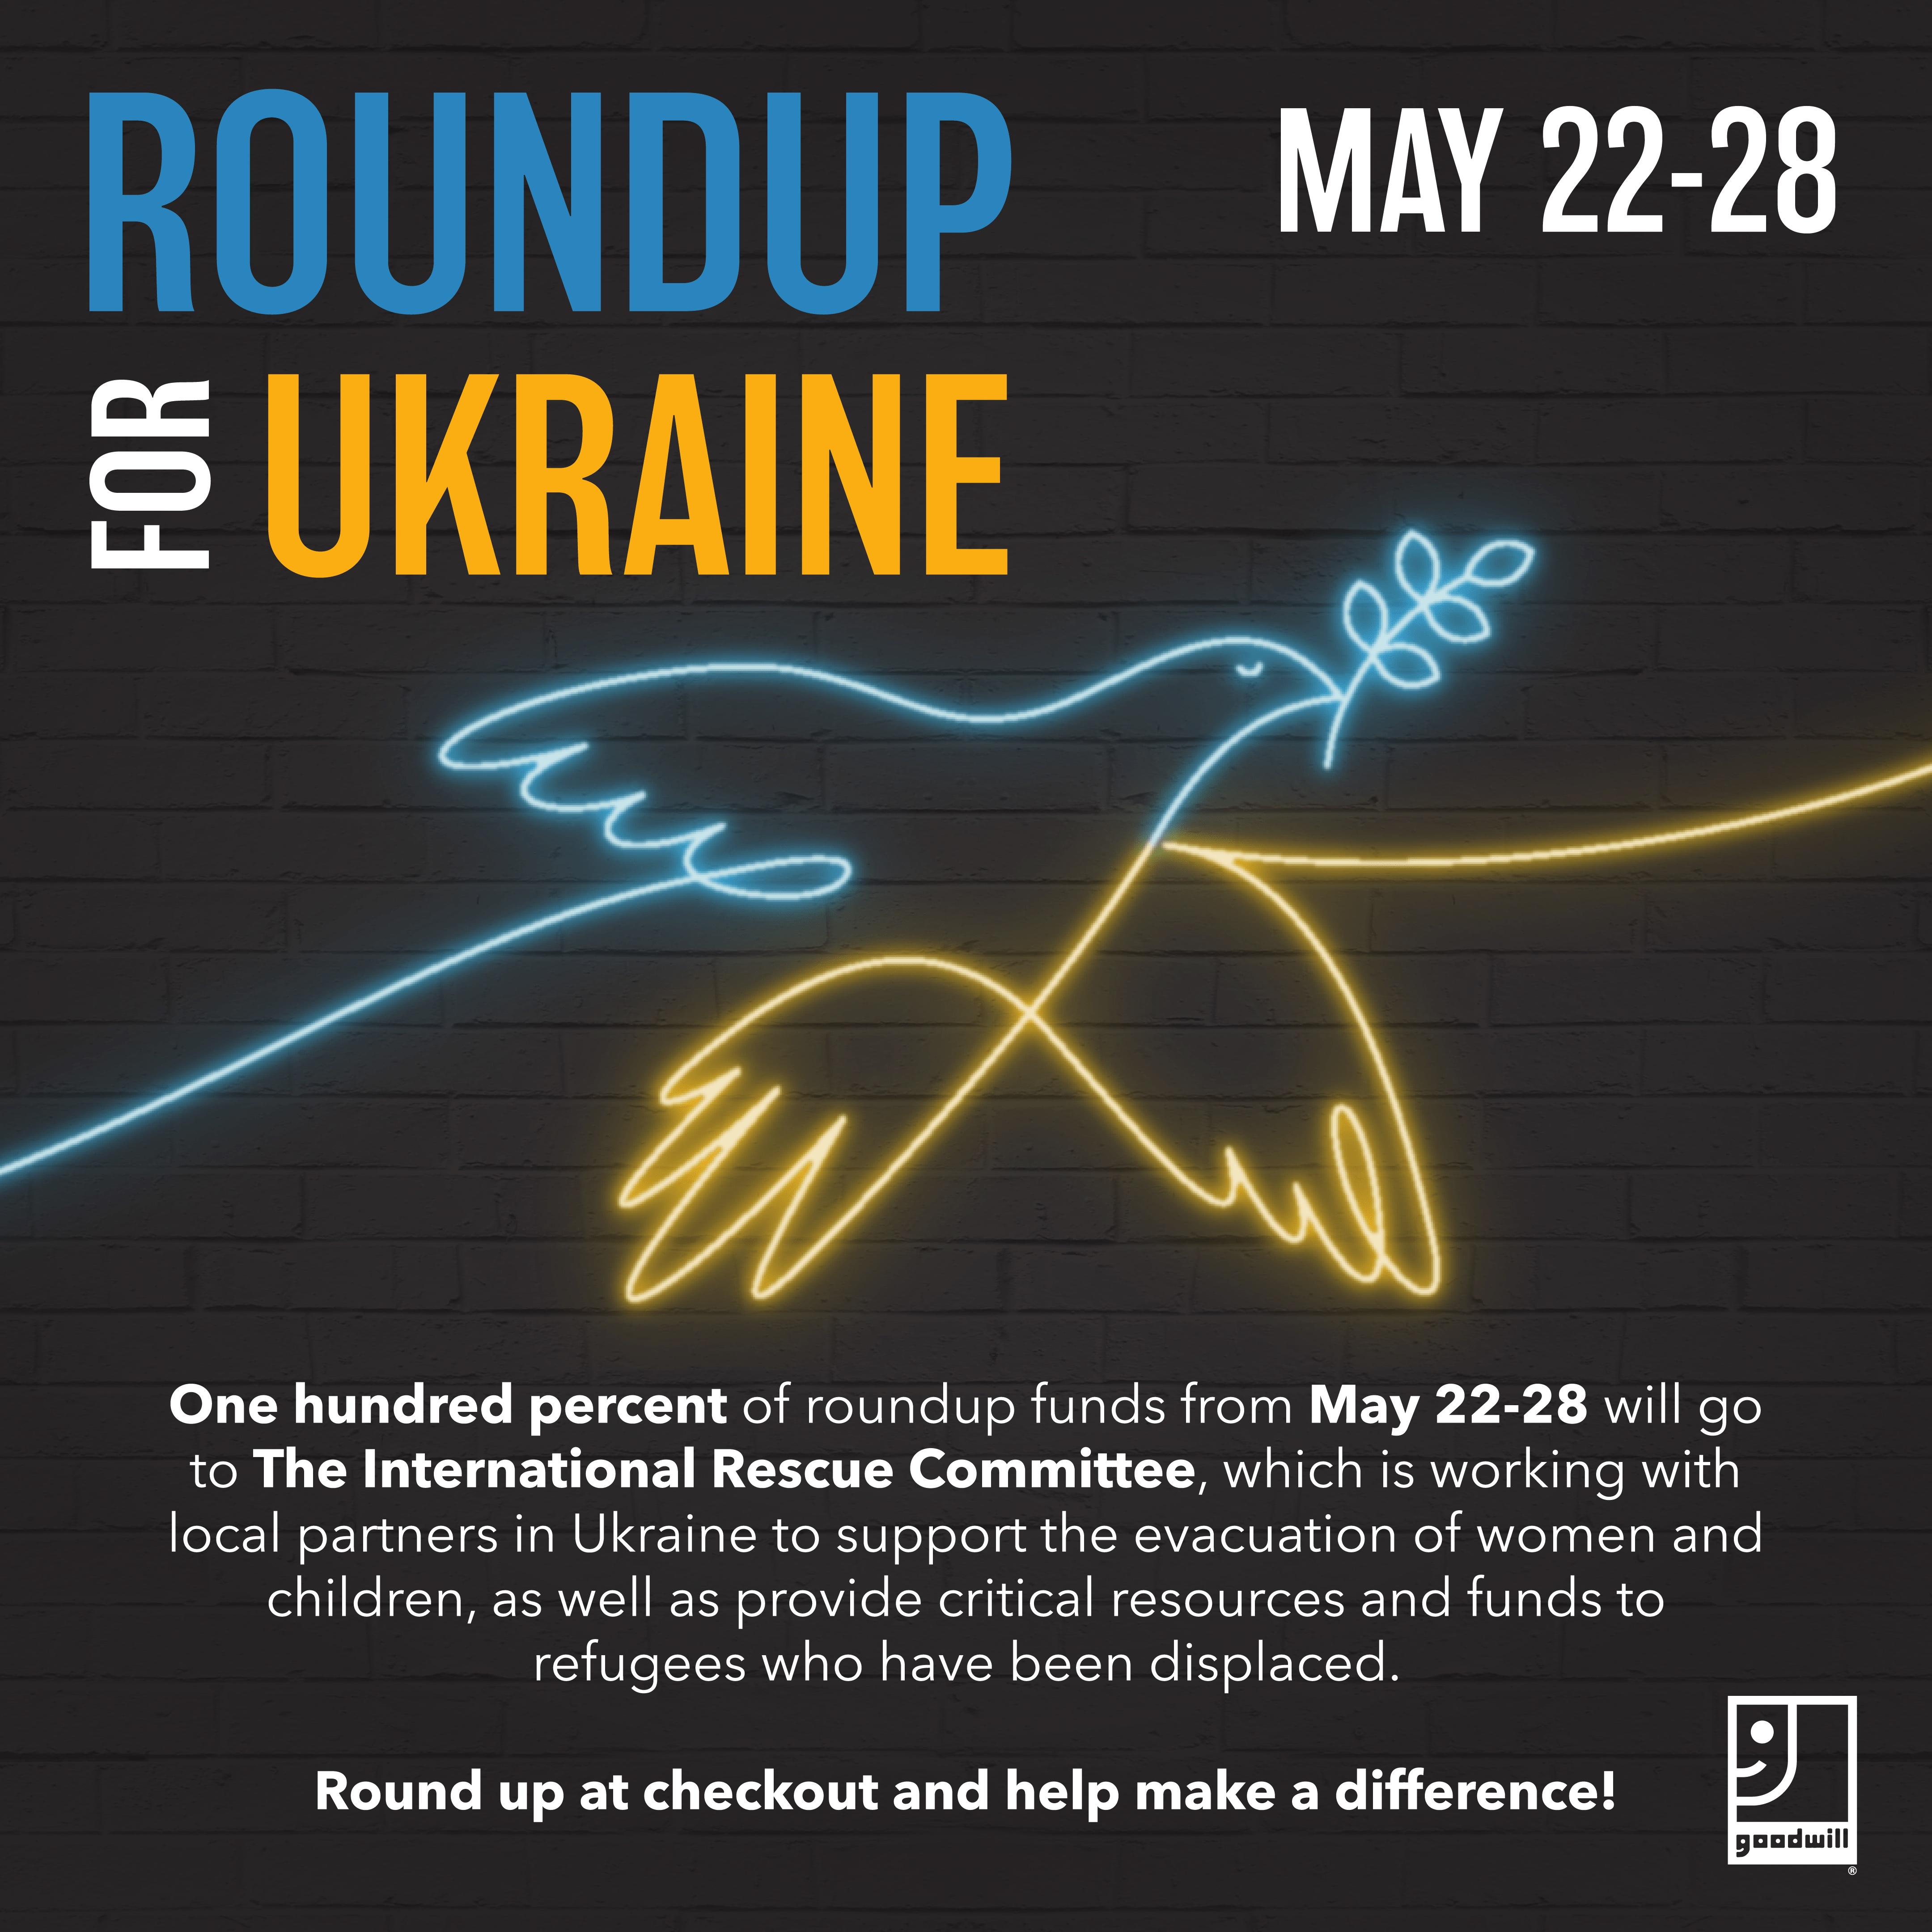 RoundUp for Ukraine May 22-28, 2022